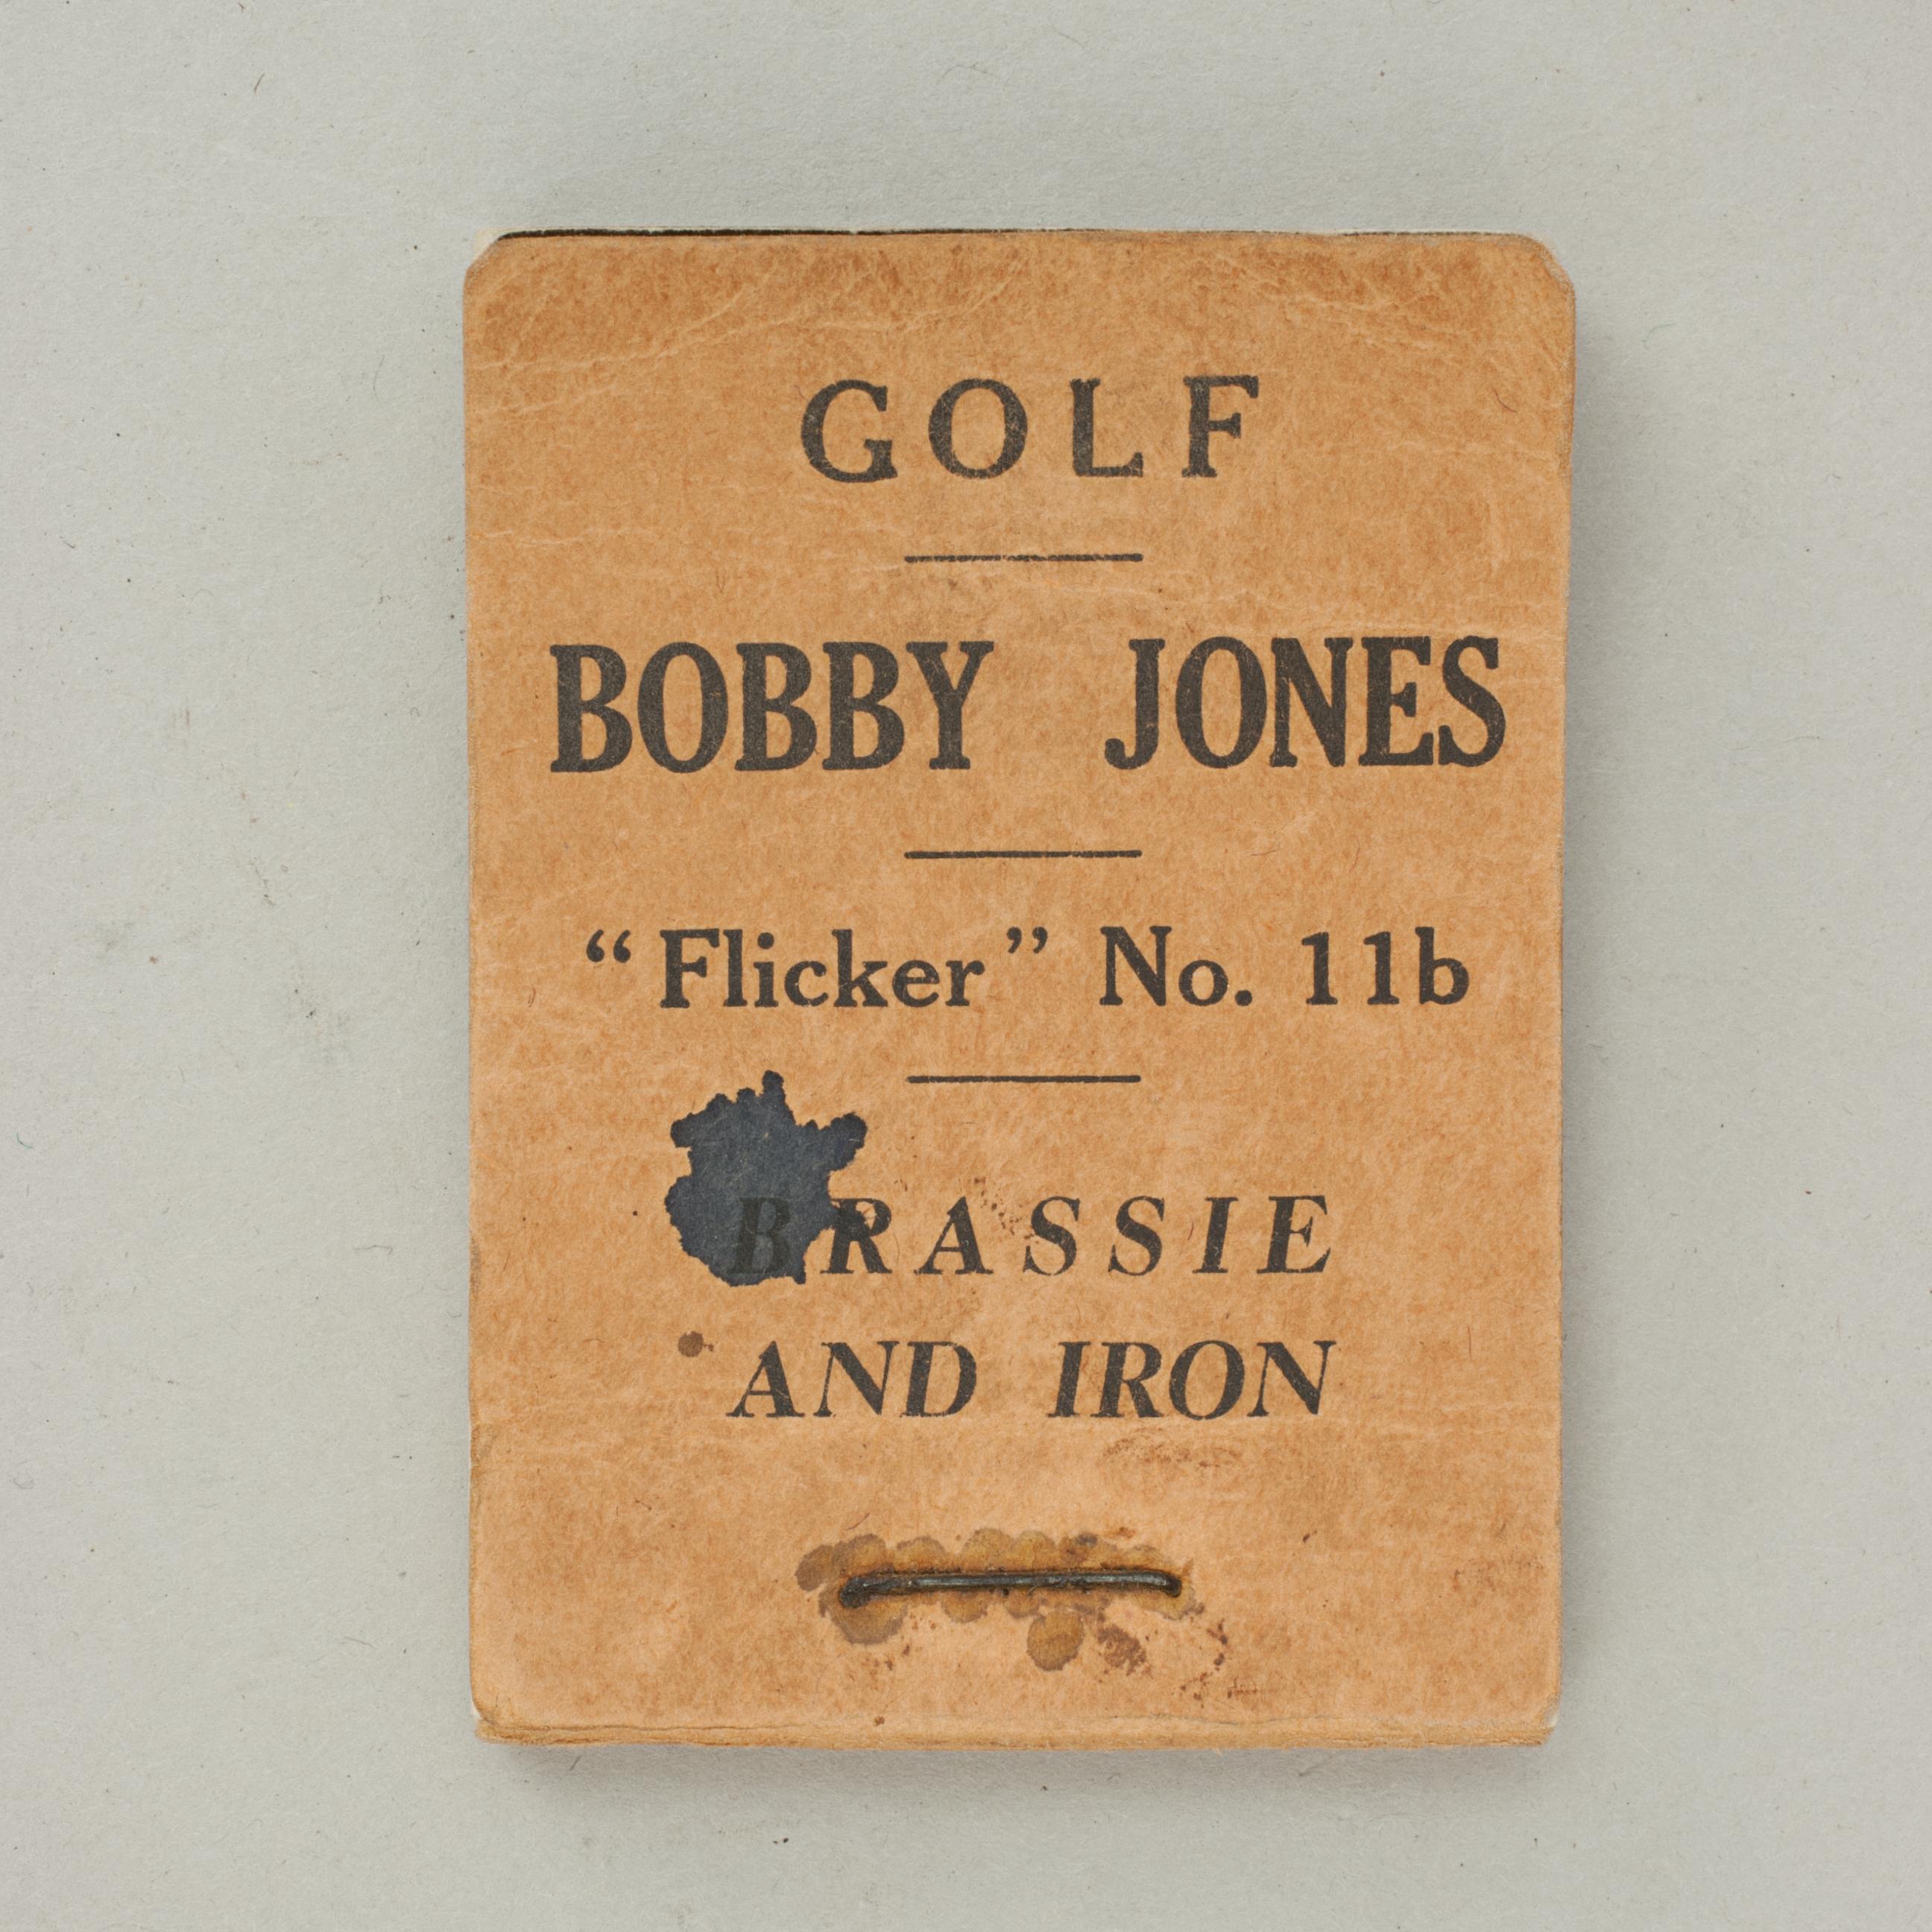 Vintage Golf Flicker Book, Bobby Jones, Brassie and Iron 1